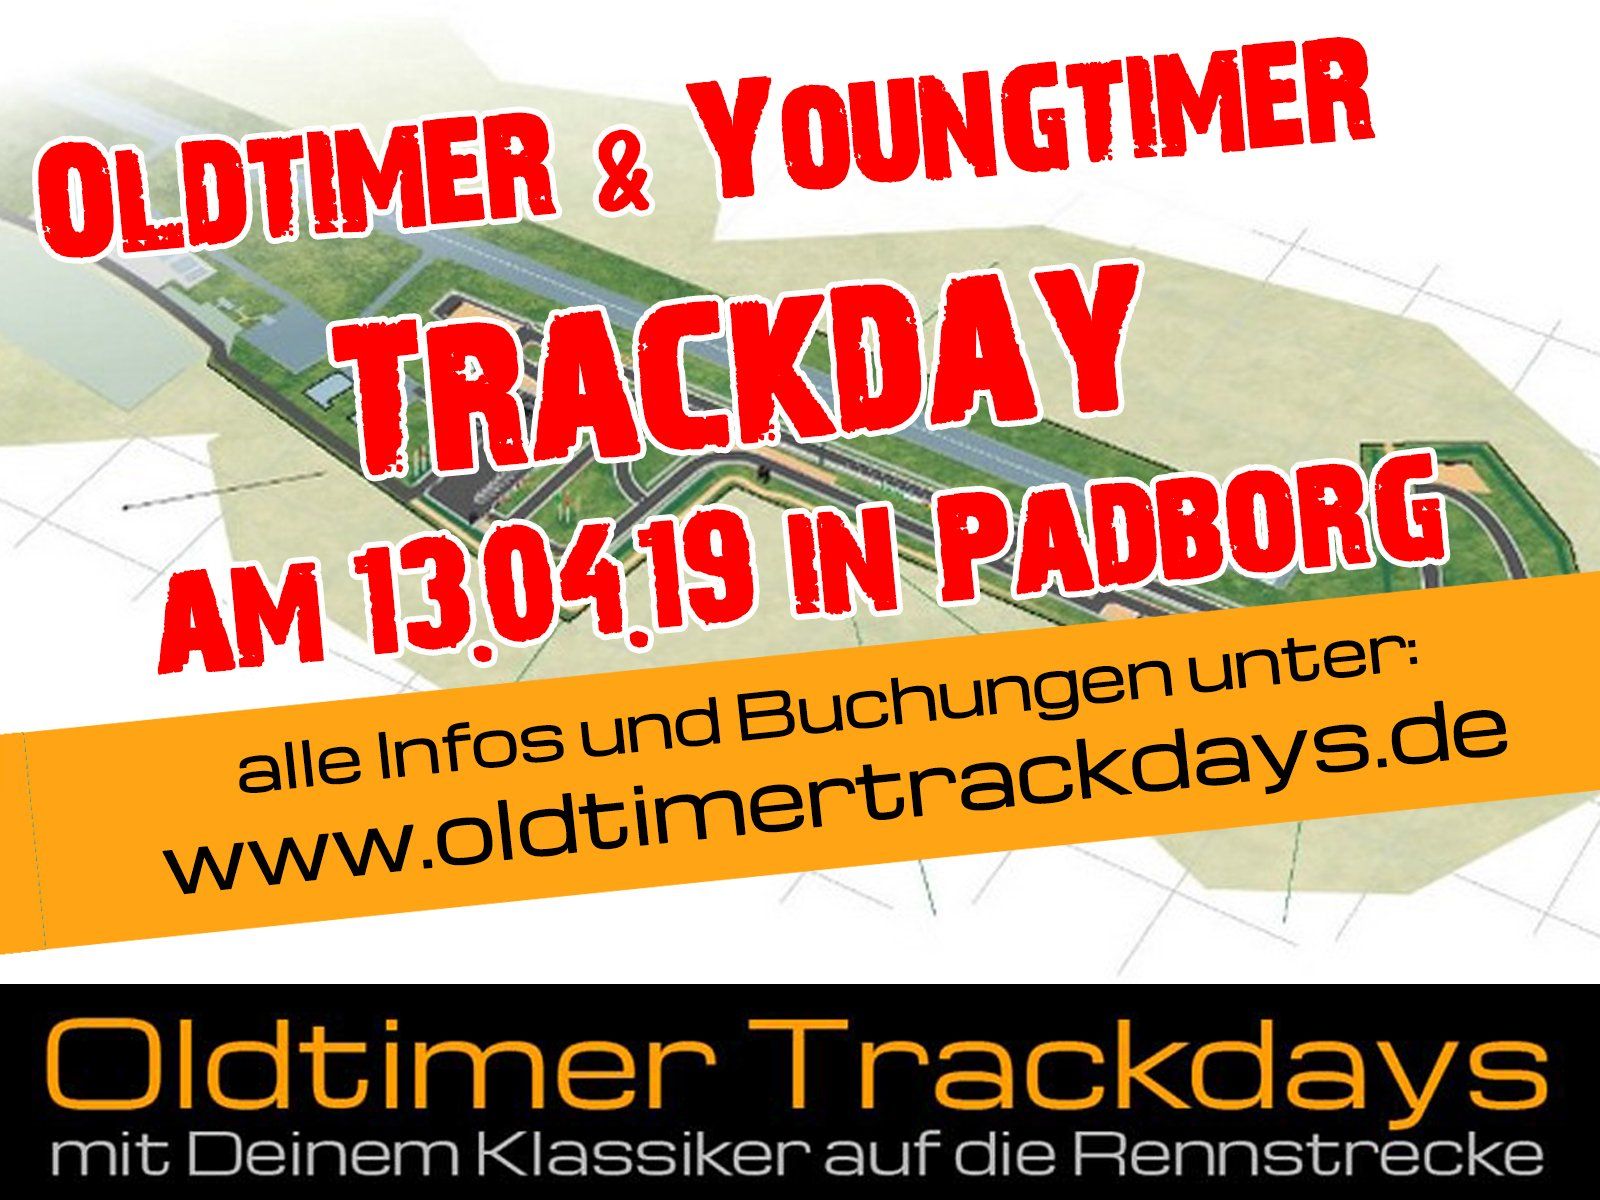 Oldtimer Trackdays Padborgring